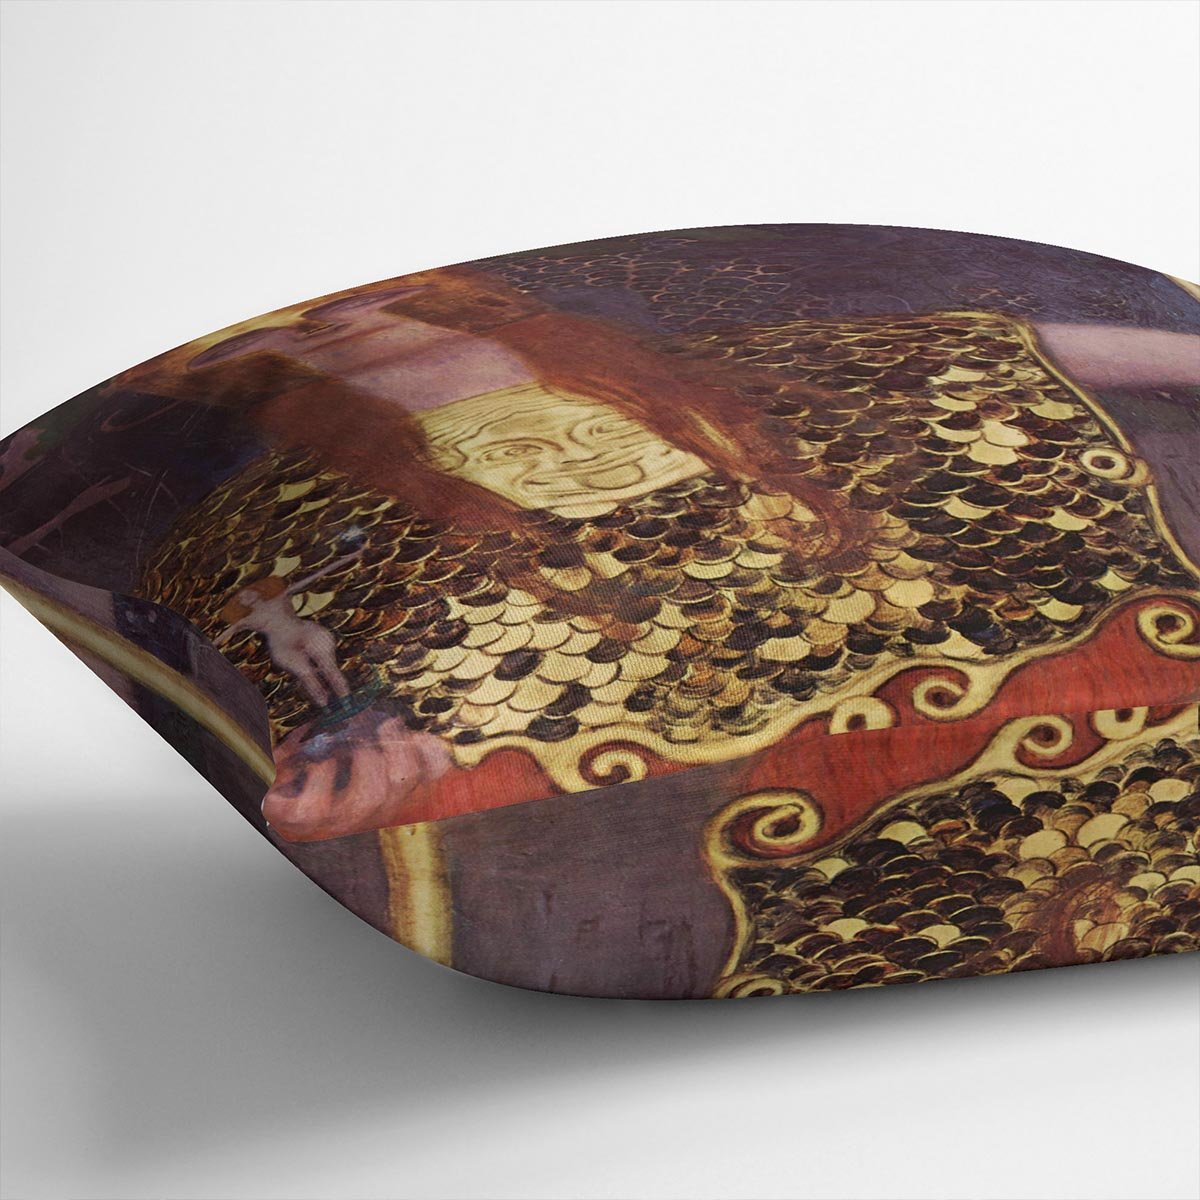 Pallas Athena by Klimt Throw Pillow